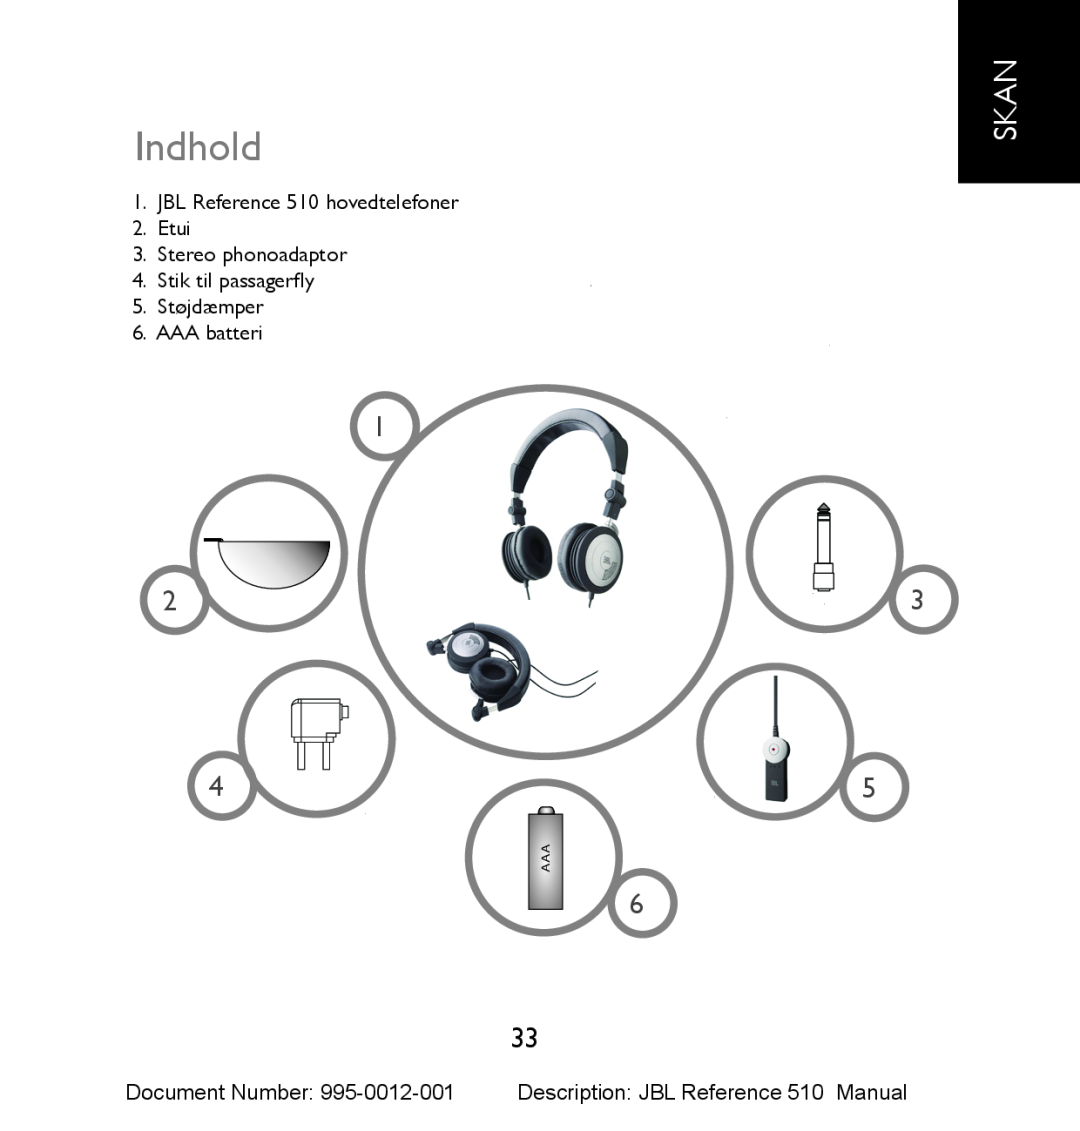 JBL manual Indhold, Skan, JBL Reference 510 hovedtelefoner 2.Etui, Stereo phonoadaptor 4.Stik til passagerfly 